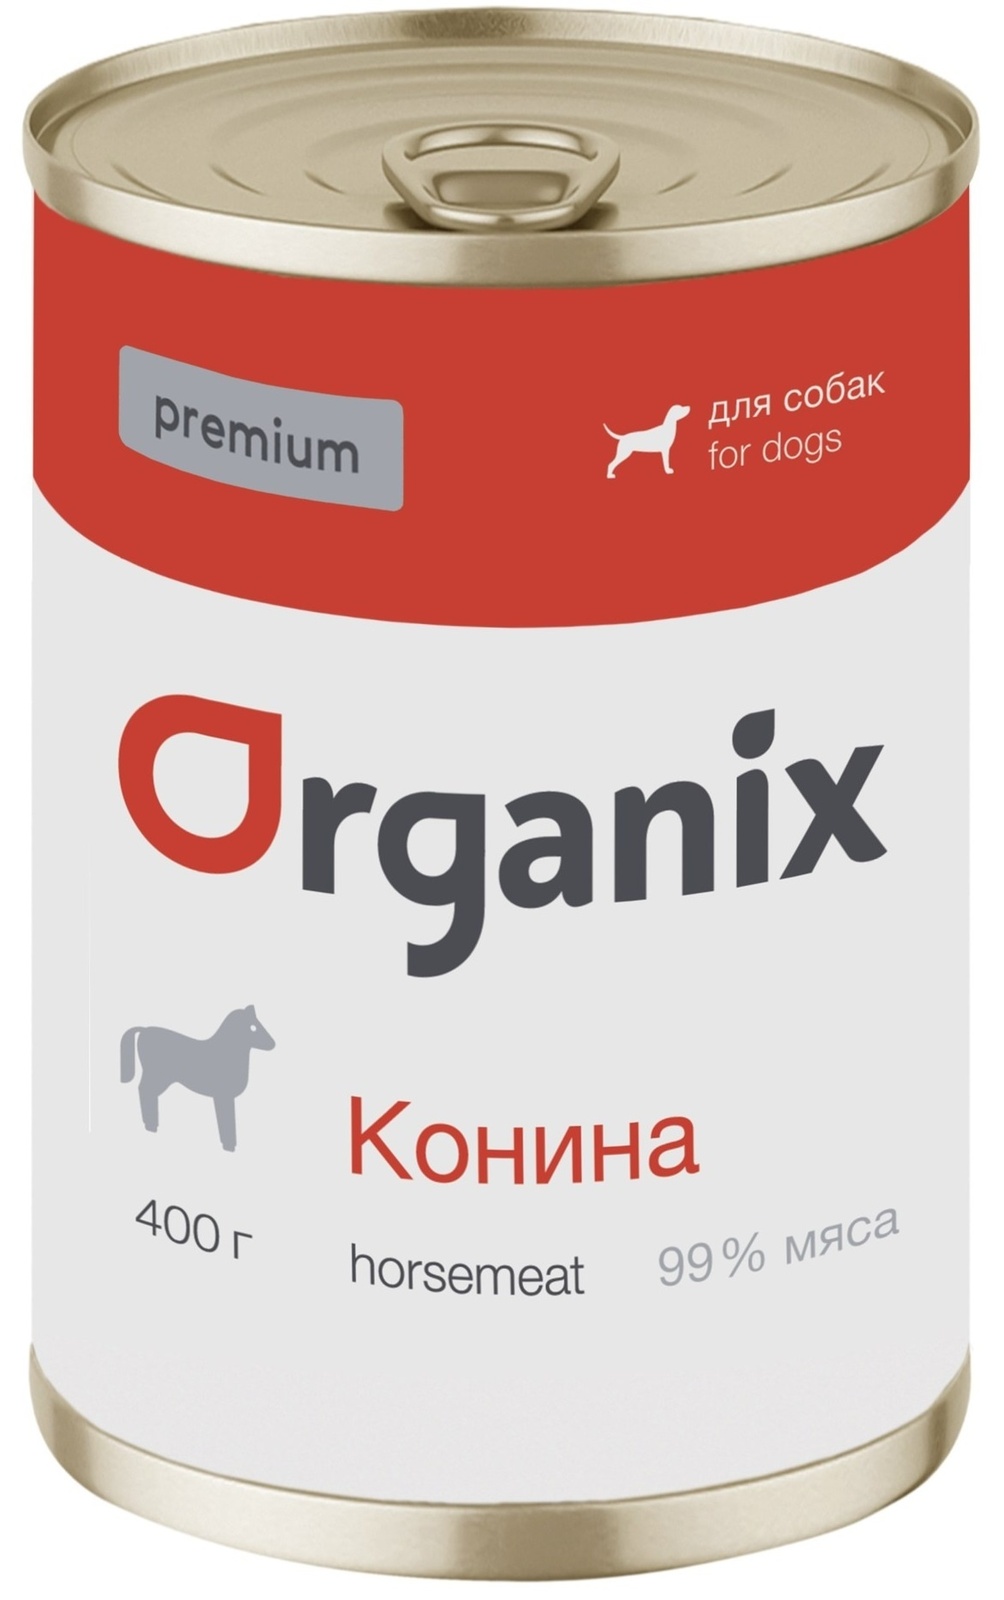 Organix консервы Organix монобелковые премиум консервы для собак, с кониной (400 г) organix консервы organix консервы для собак утка индейка картофель 400 г